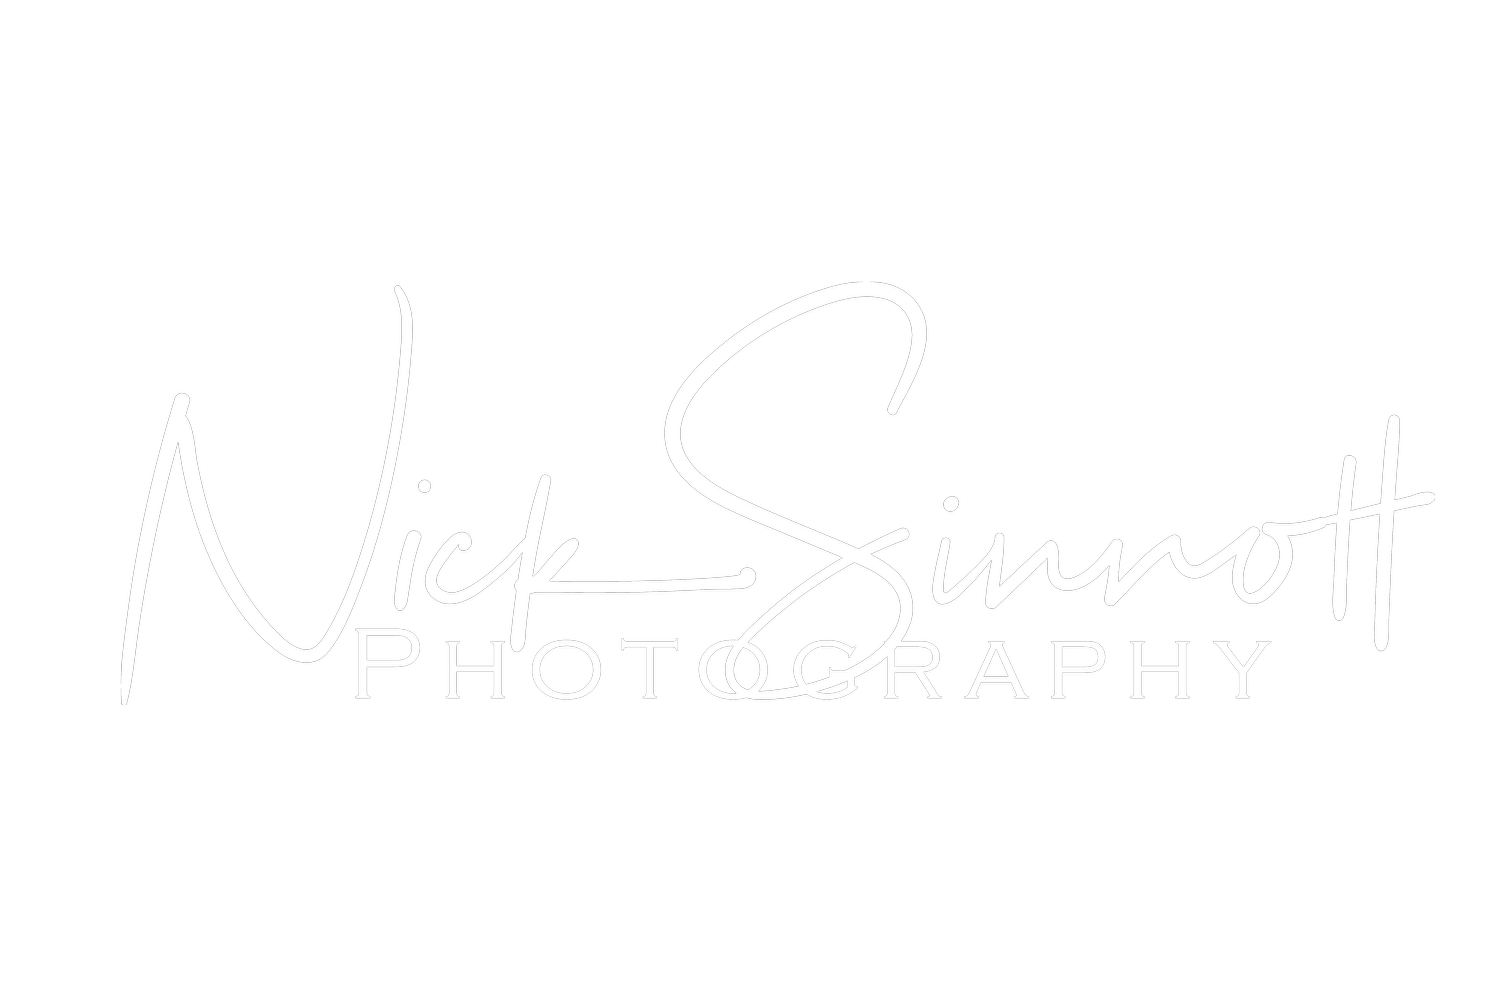 Nick Sinnott Photography